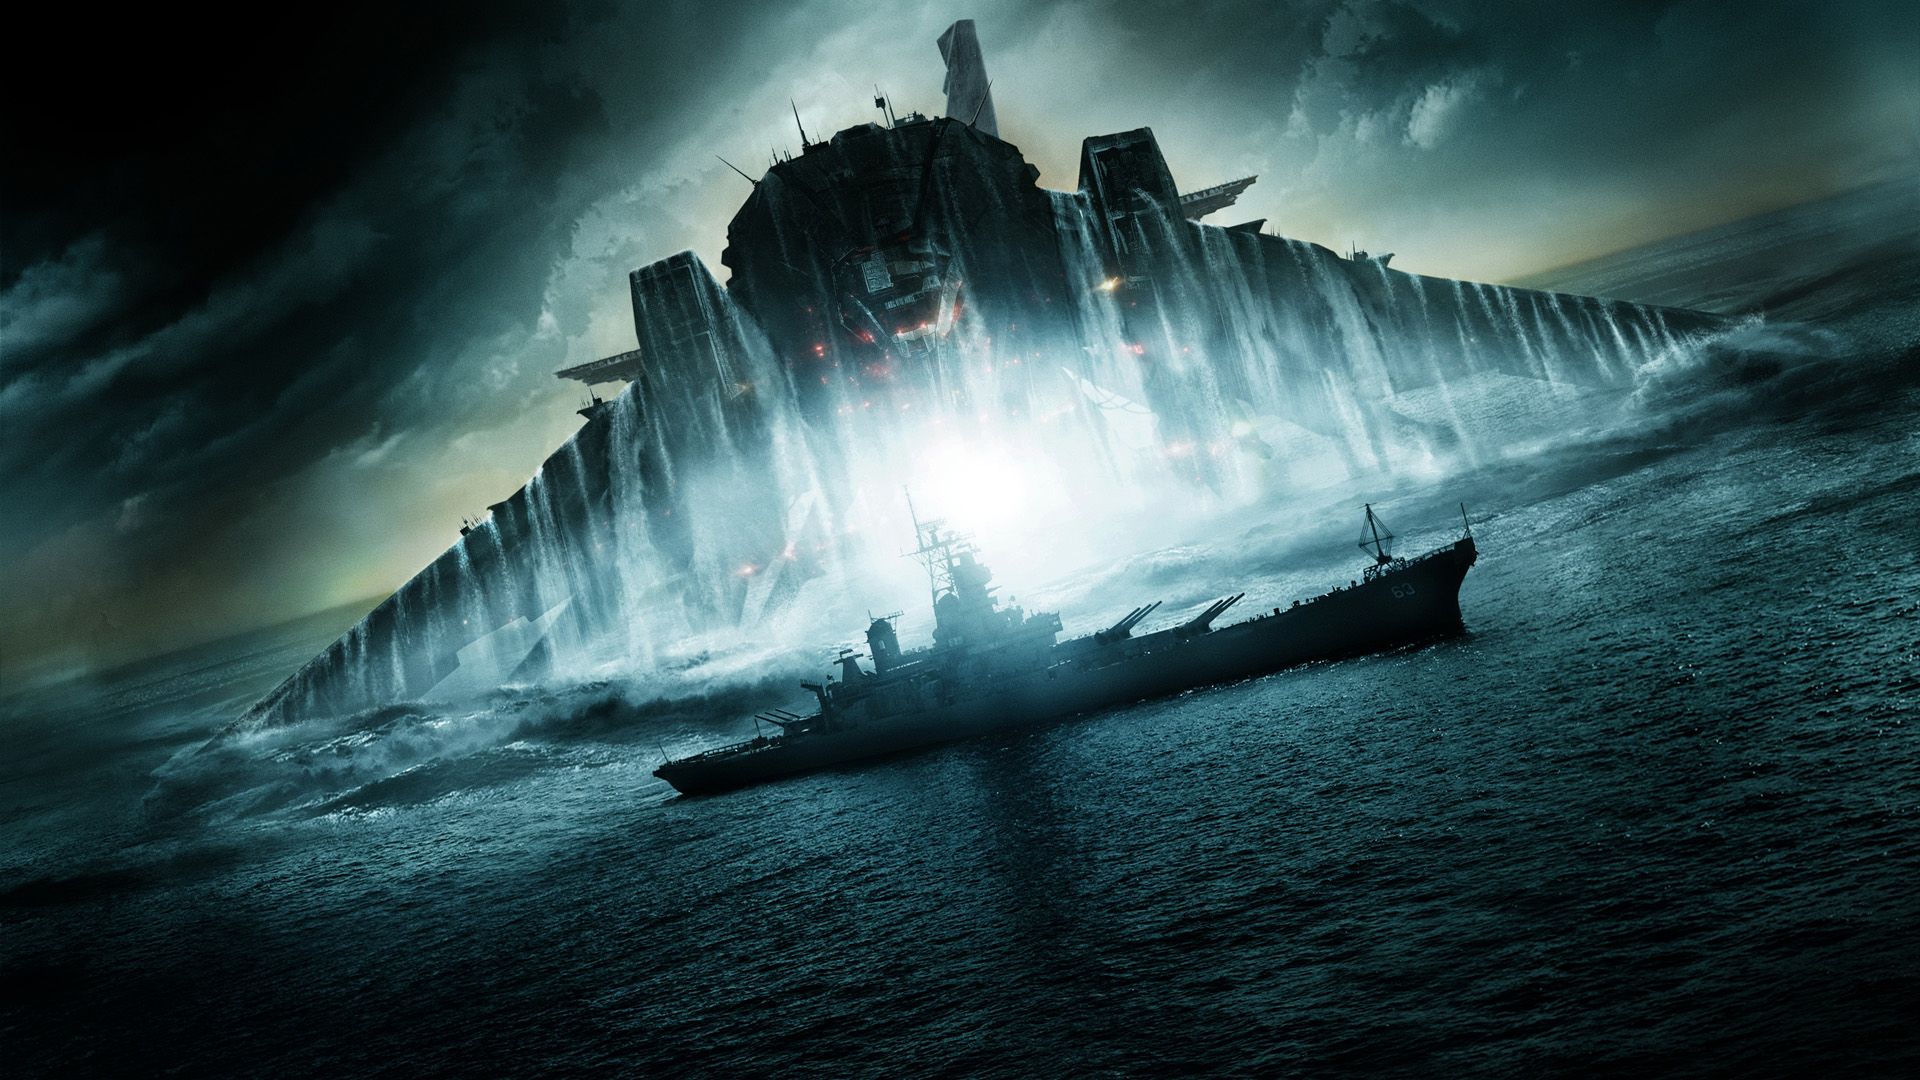 Battleship background